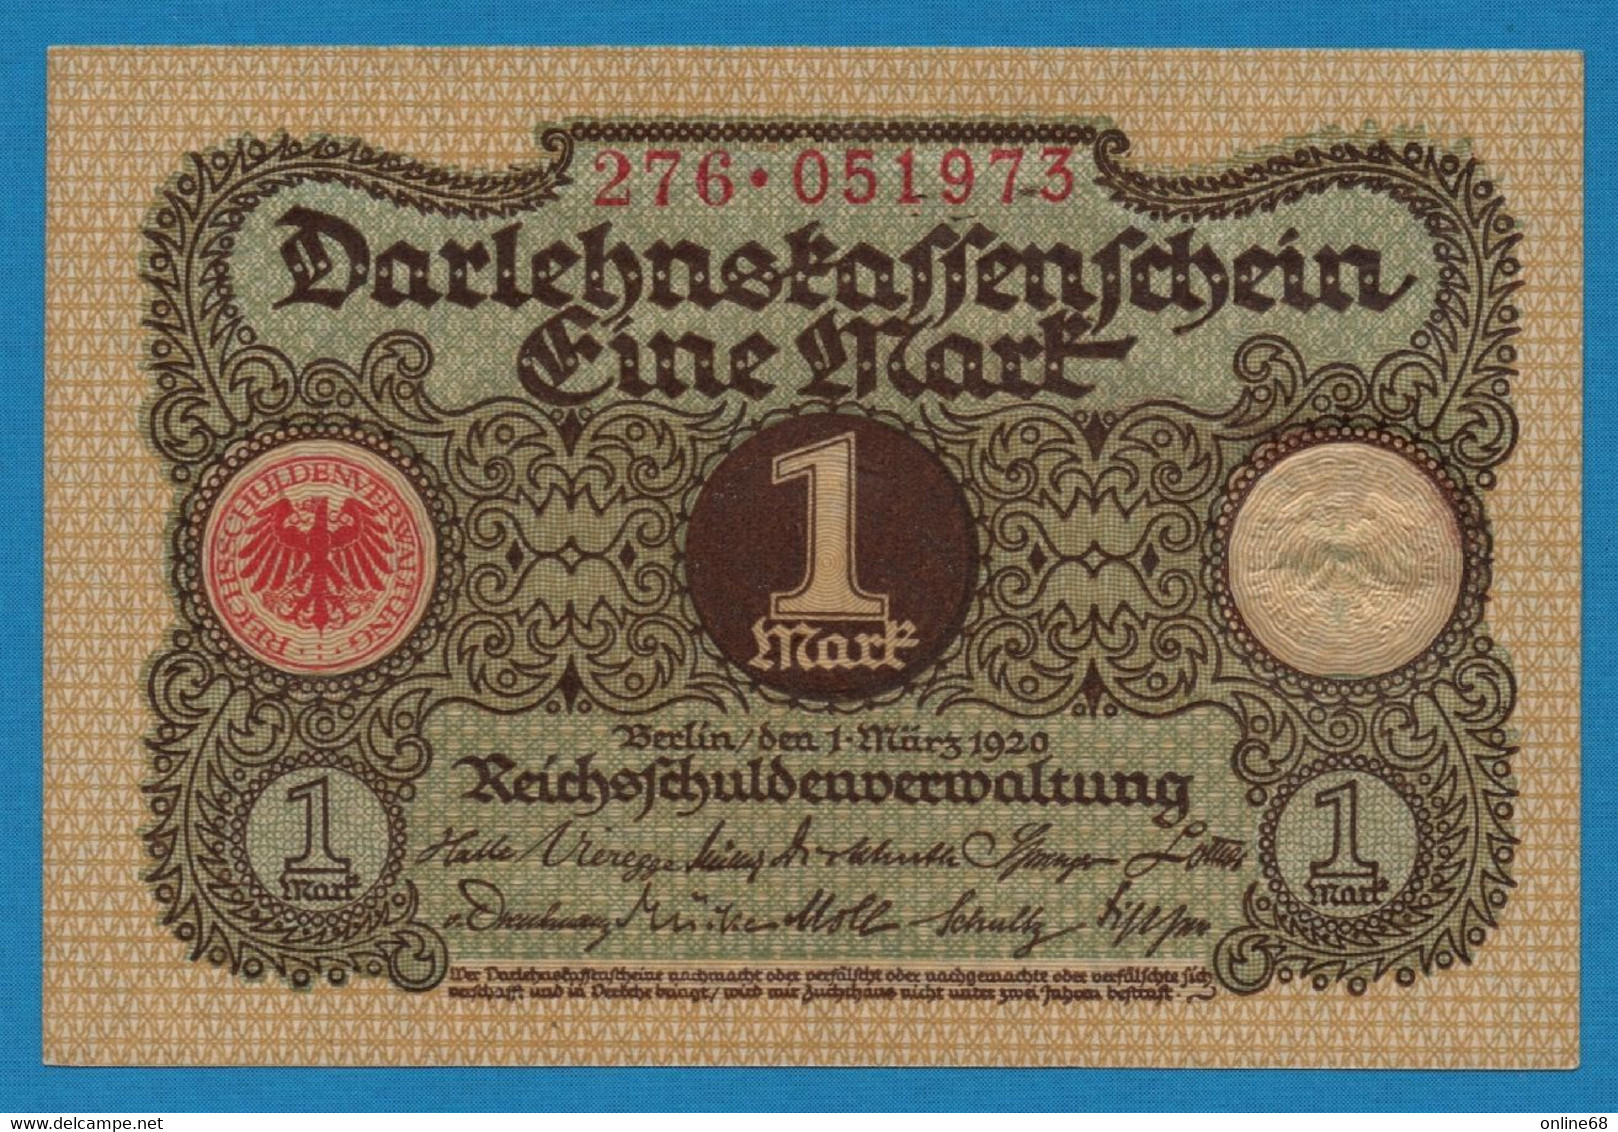 DEUTSCHES REICH 1 MARK 01.03.1920  # 276.051973 P# 58  DARLEHENSKASSENSCHEIN - Reichsschuldenverwaltung